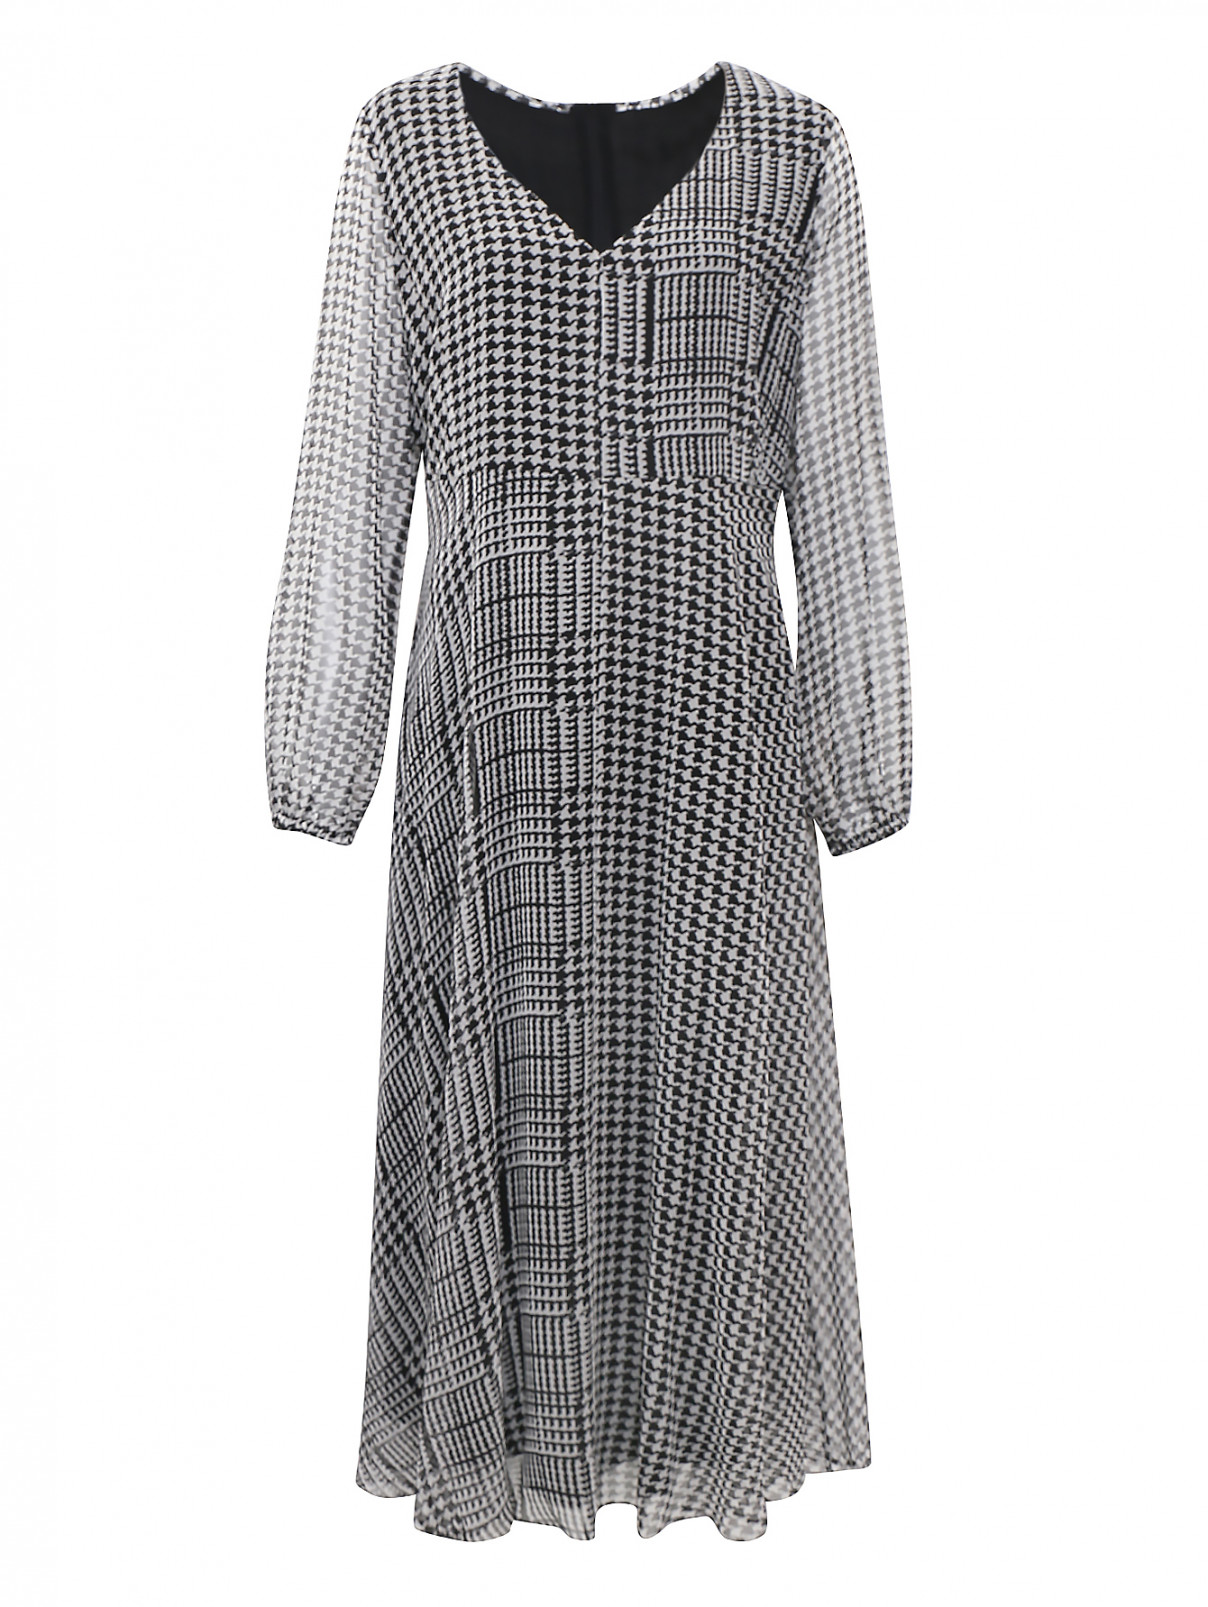 Платье из шелка в клетку с юбкой-клеш Marina Rinaldi  –  Общий вид  – Цвет:  Черный